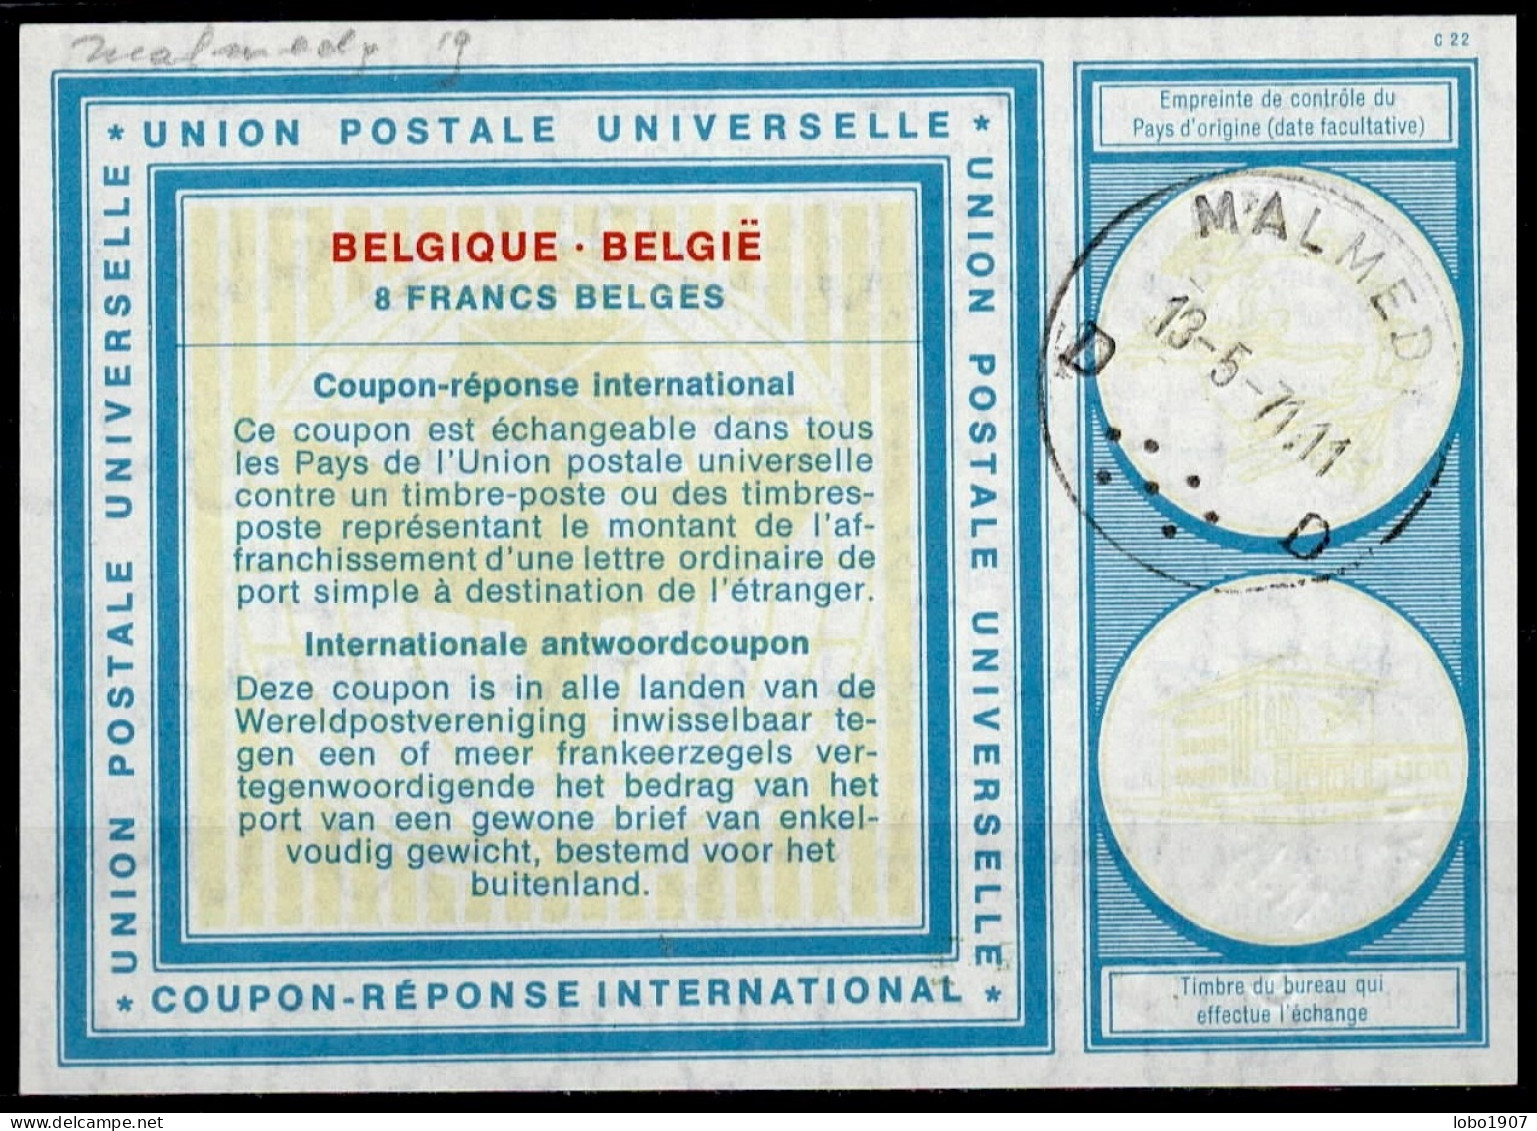 MALMEDY 13.05.71   BELGIQUE BELGIE BELGIUM  Vi19  8 FRANCS BELGES Int. Reply Coupon Reponse Antwortschein IAS IRC - Internationale Antwortscheine